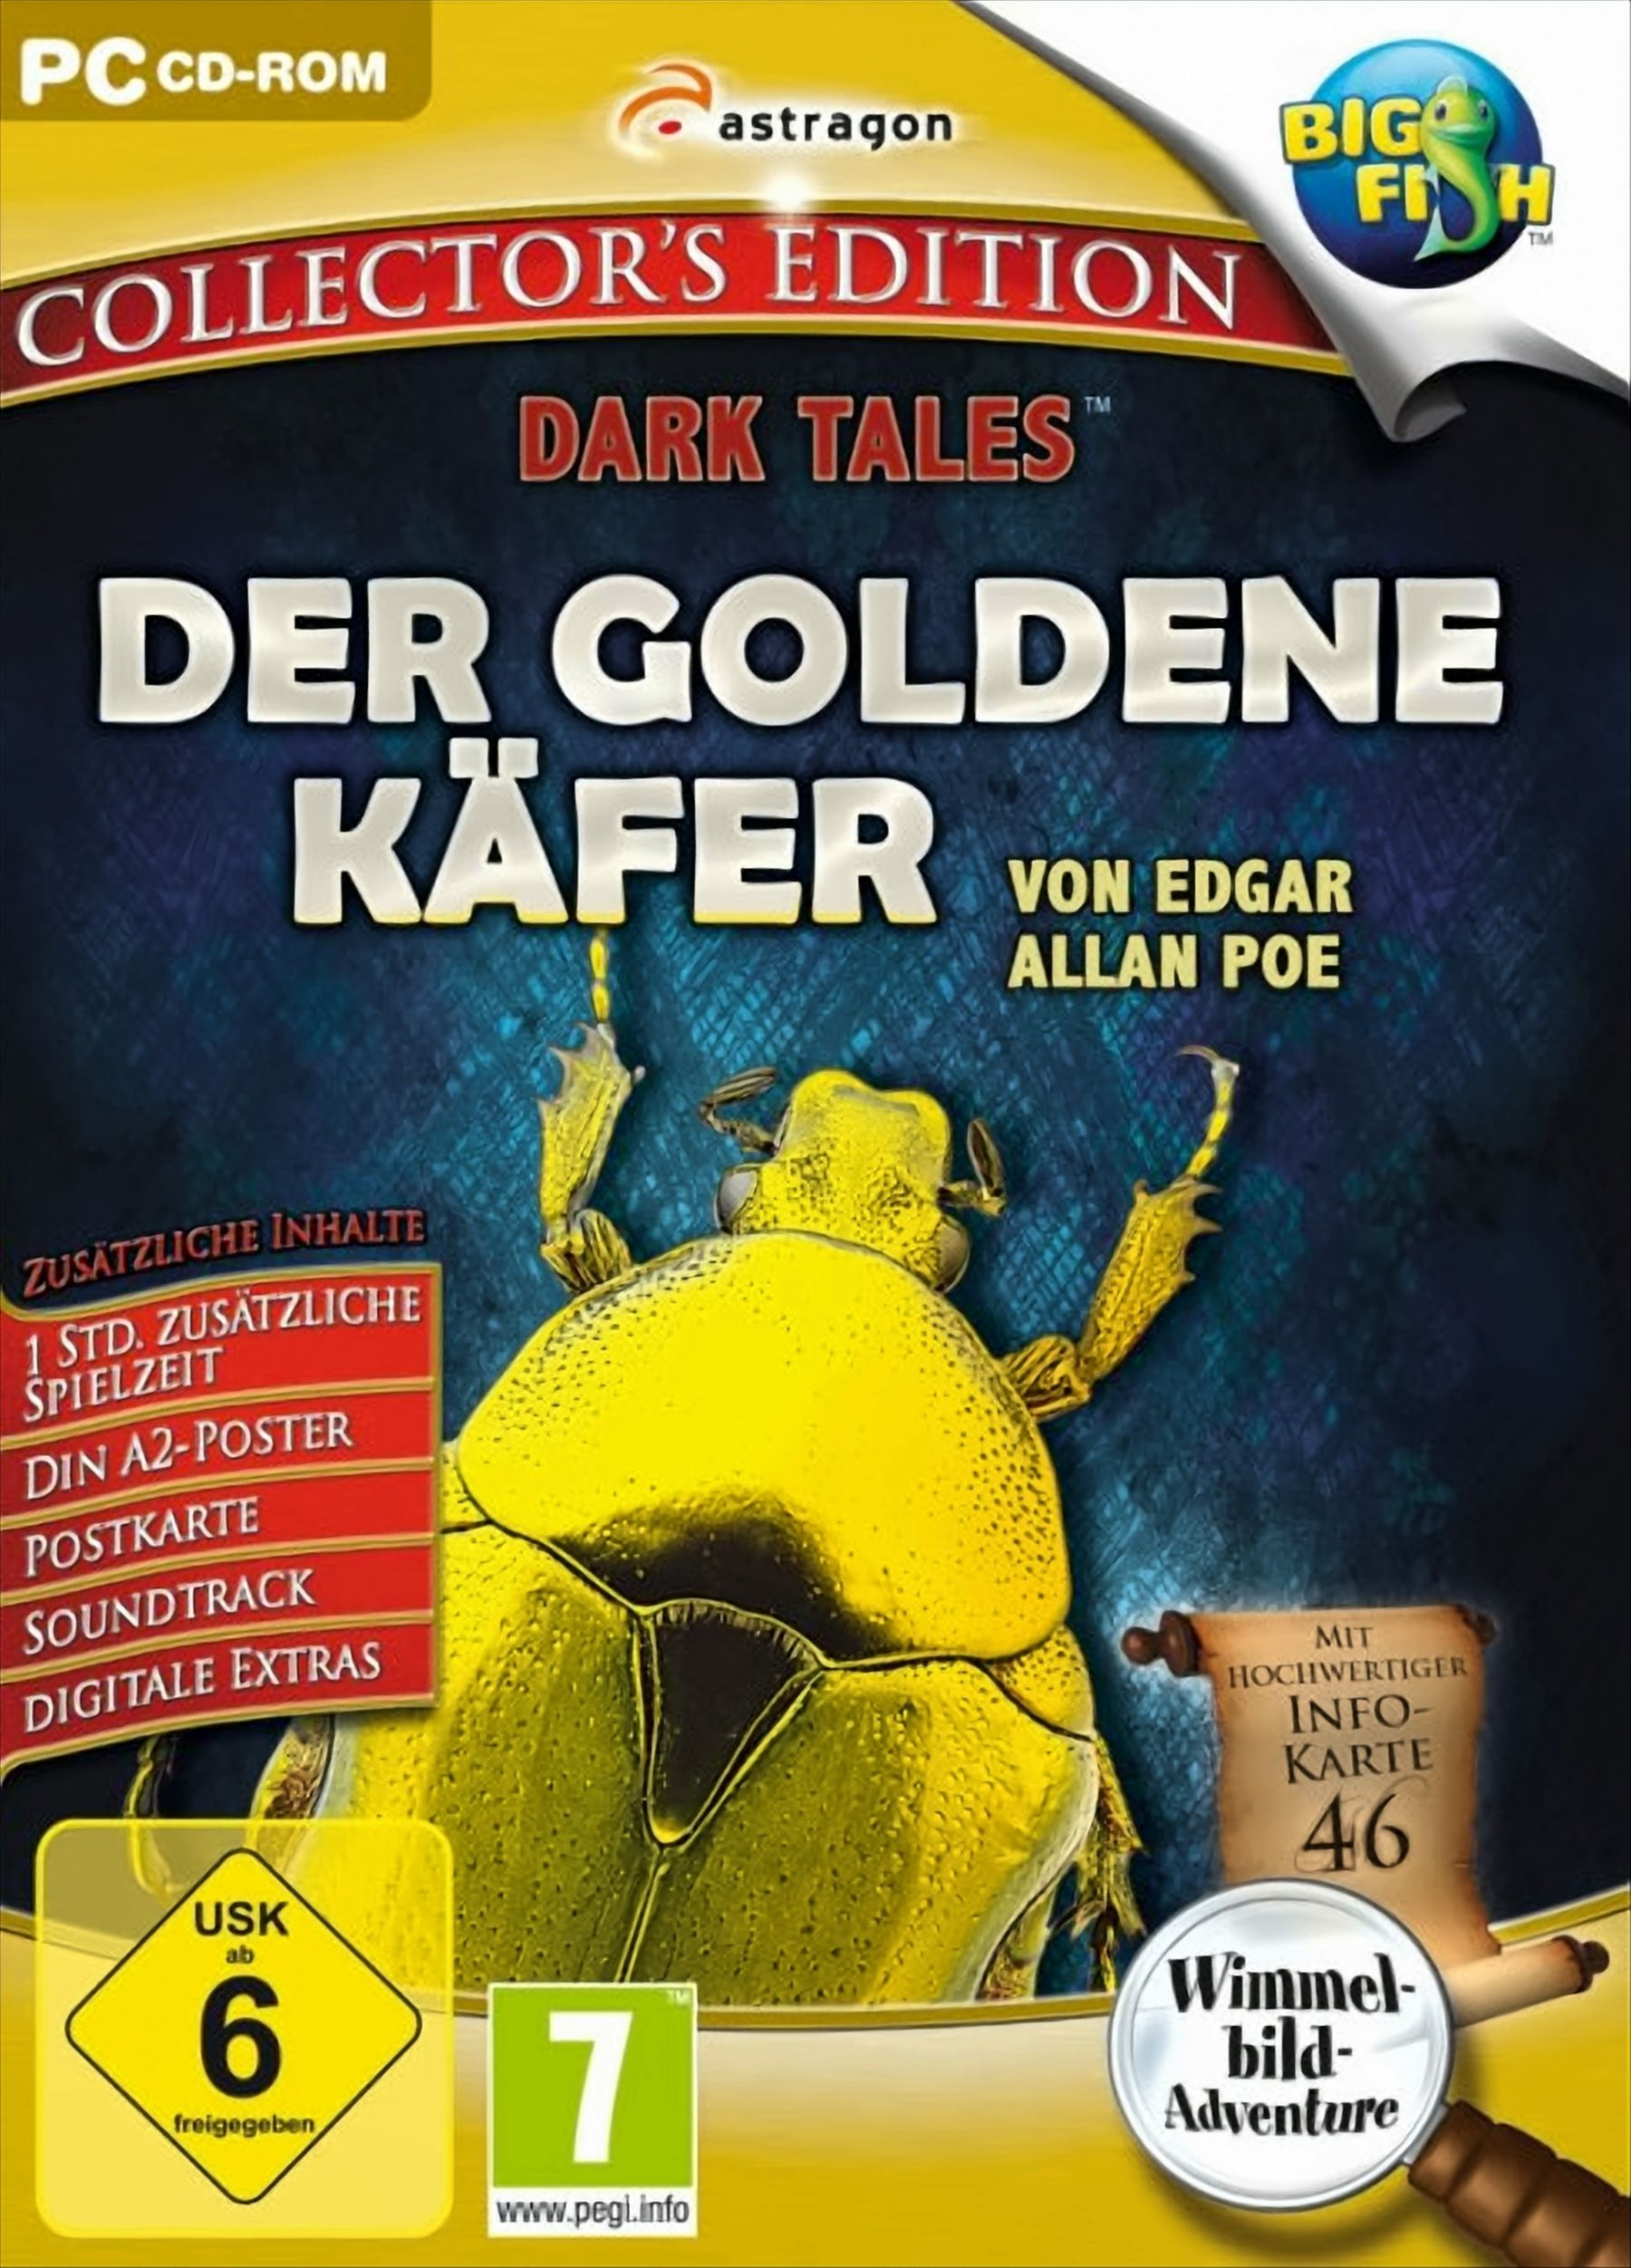 von Der Edition Edgar Dark Allan Collector\'s - Käfer Poe Tales: [PC] goldene